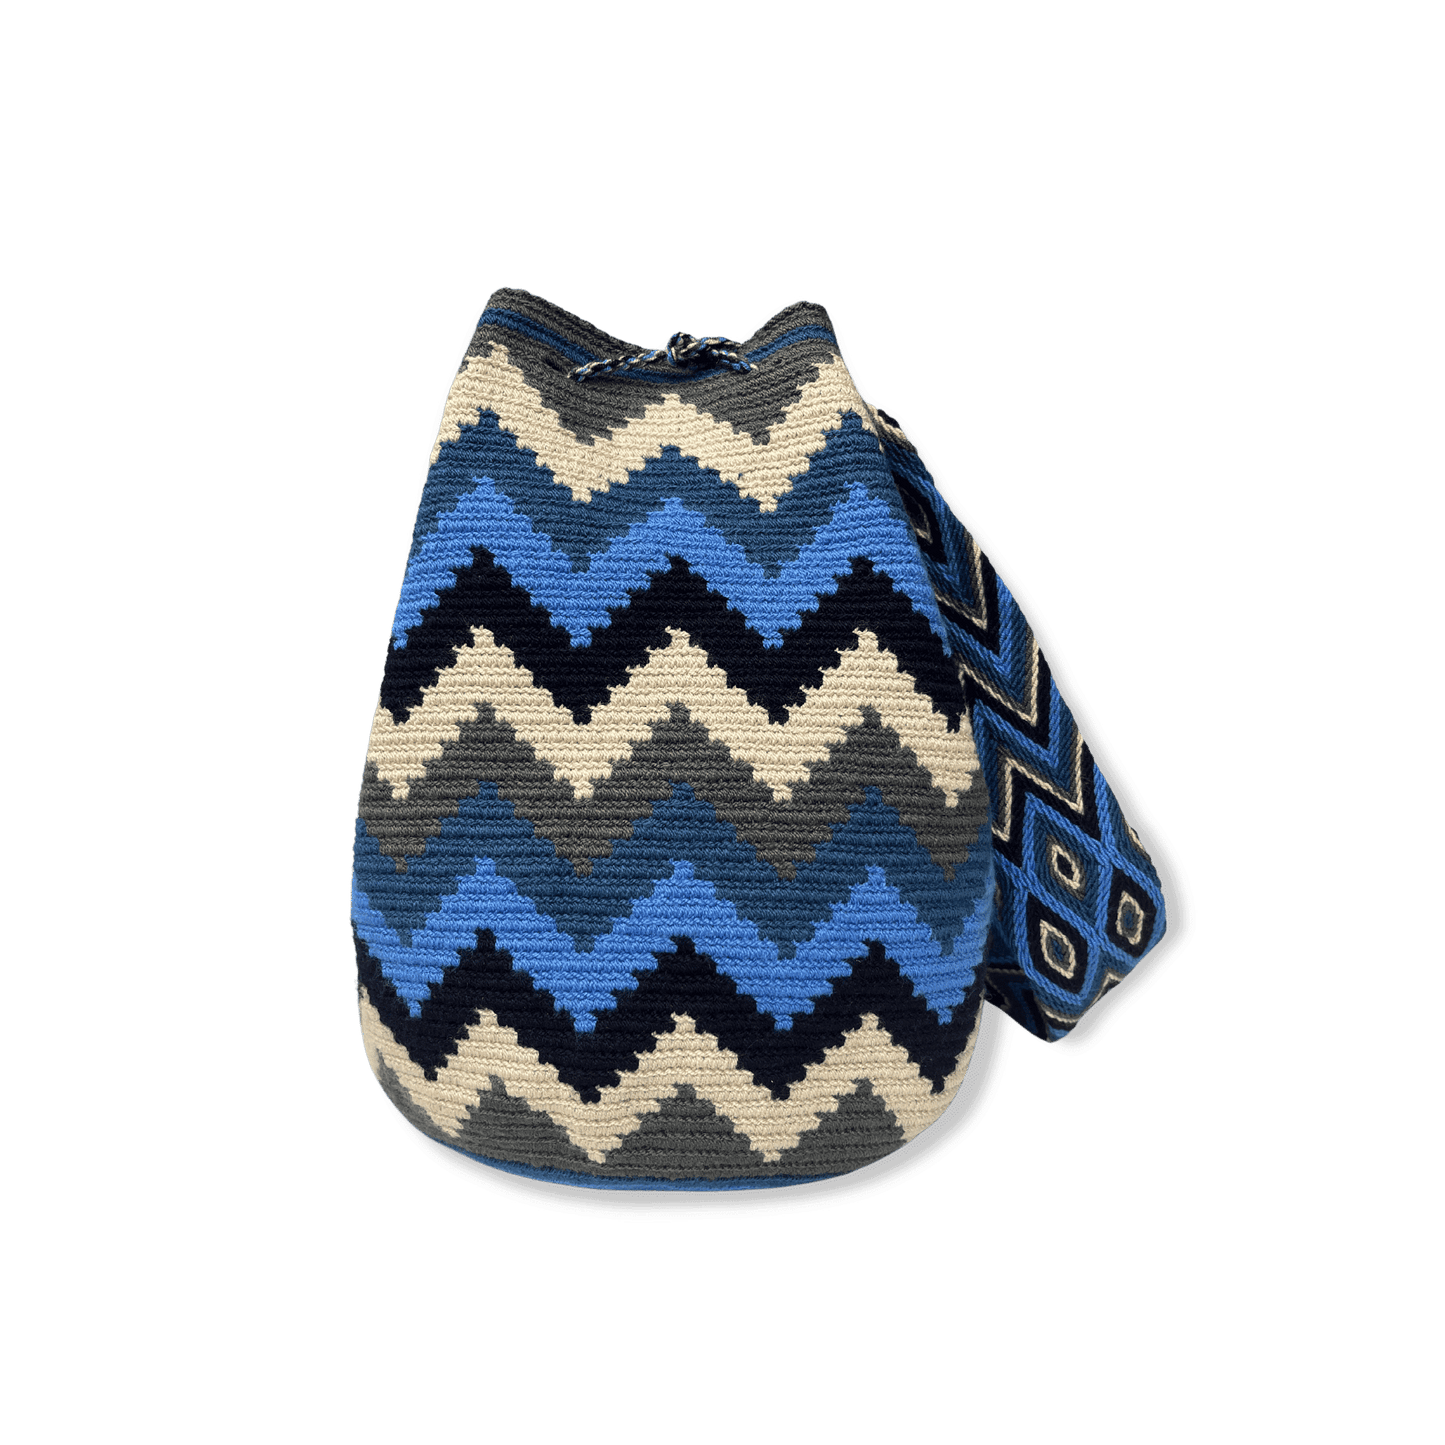 Mochila wayuu artesanal para mujer en colores azules, beige y gris que representan las montañas de la sierra